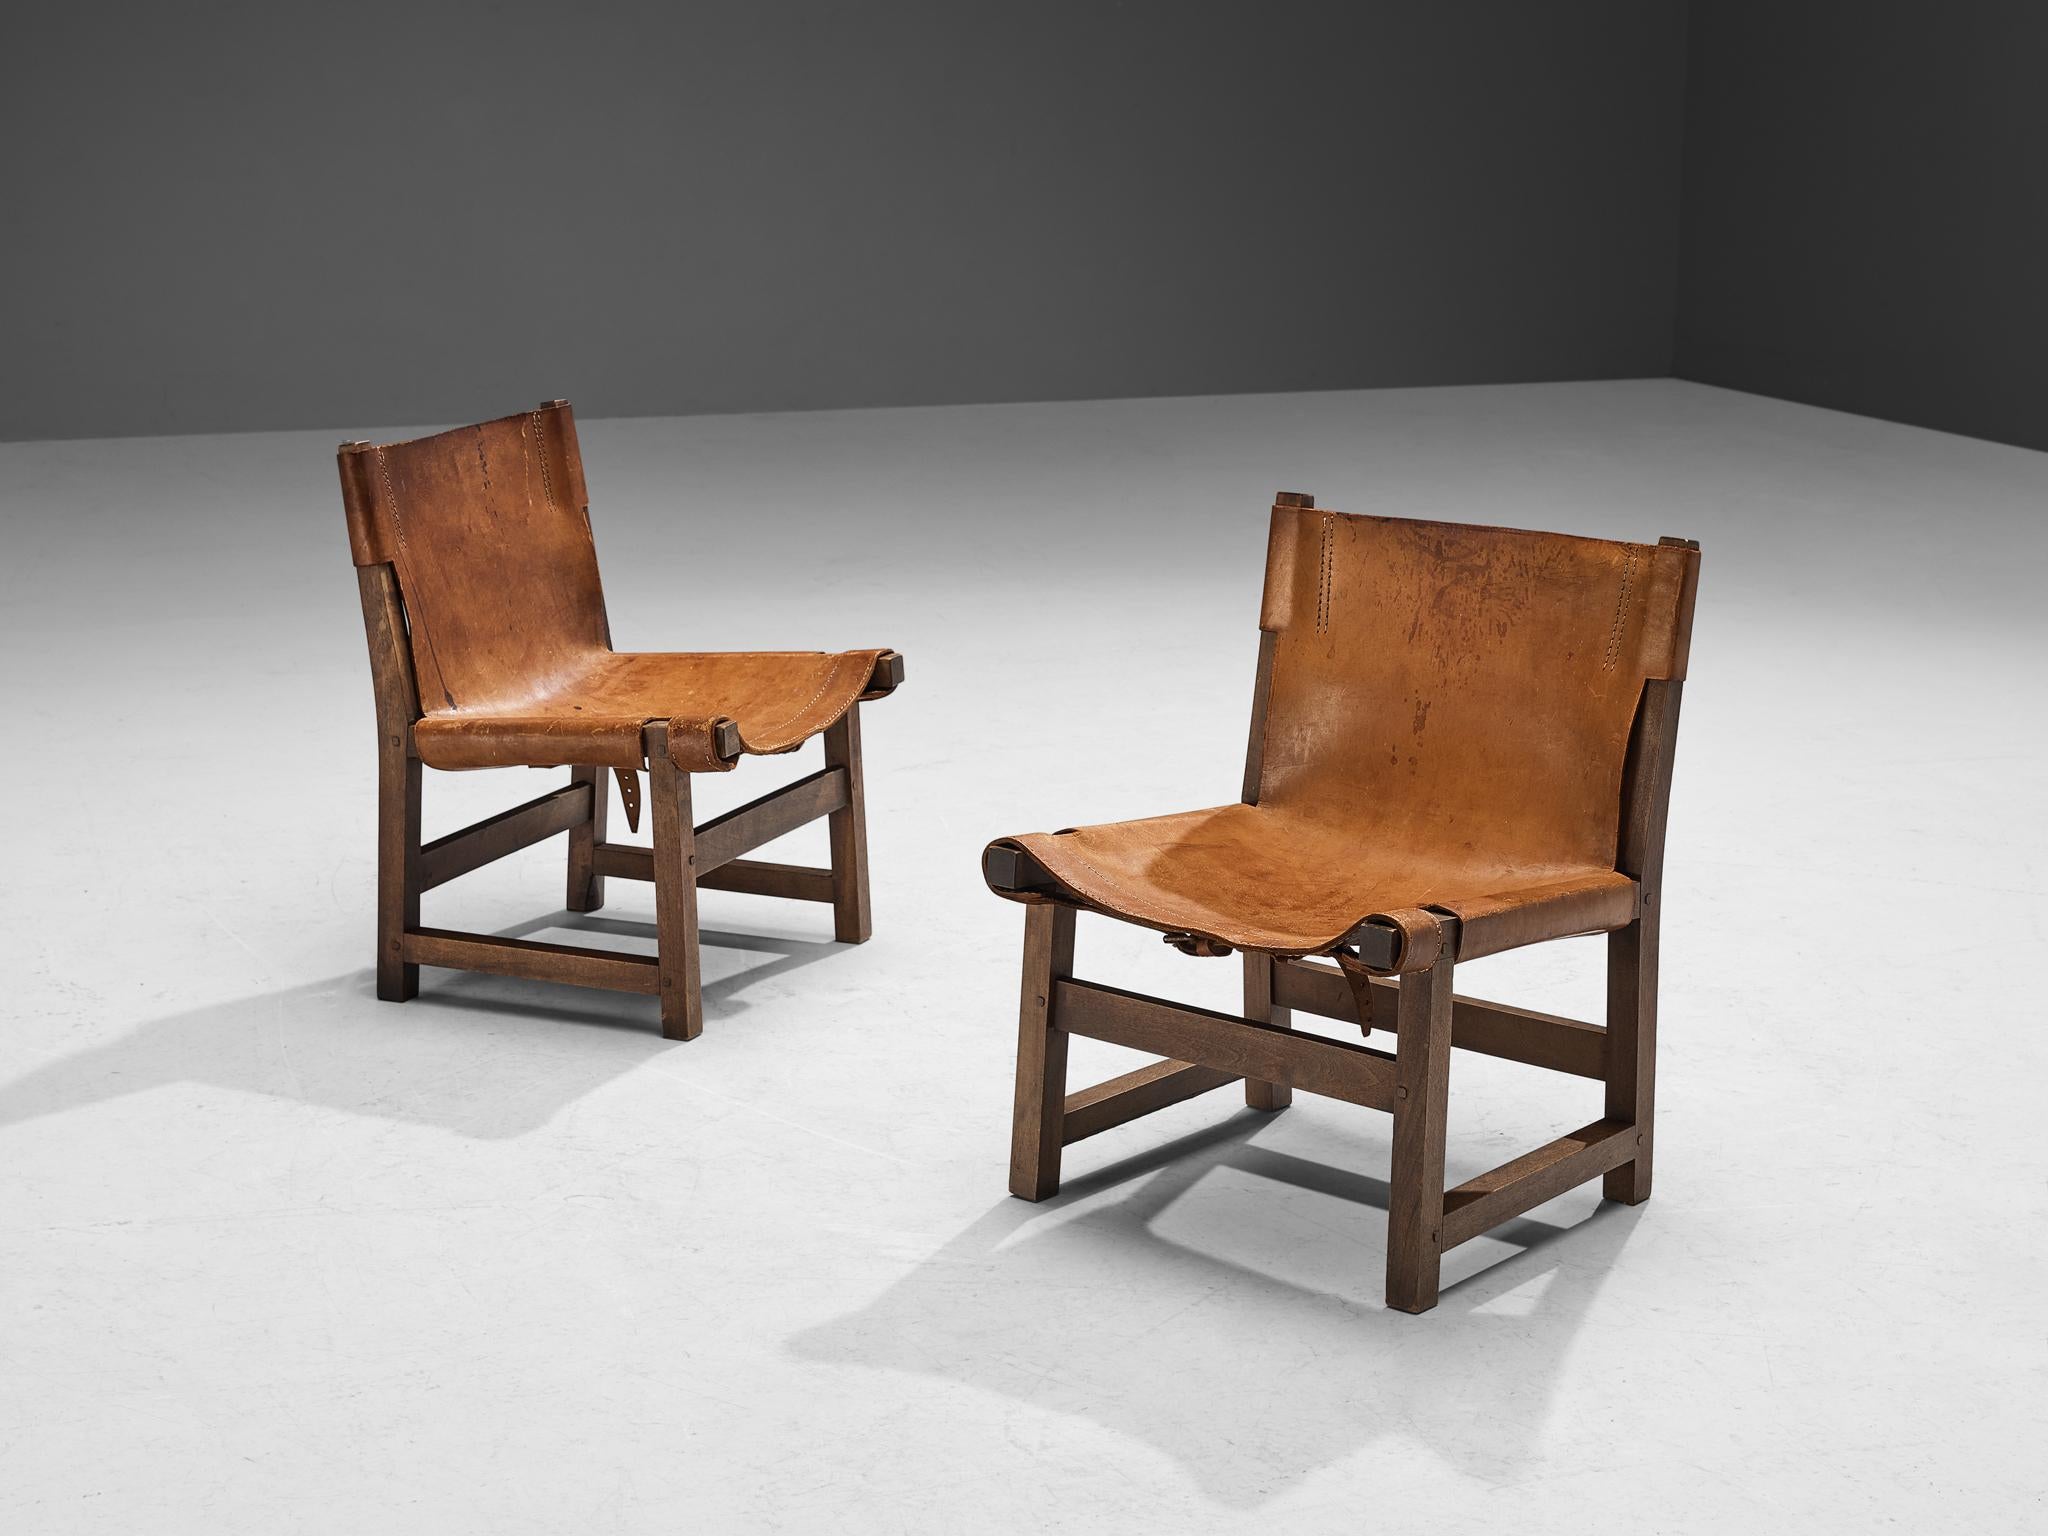 Paco Muñoz pour Darro, paire de chaises 'Riaza' pour enfants, noyer, cuir, métal, Espagne, années 1960

Cette robuste chaise longue basse, conçue par Paco Muñoz dans les années 1960, illustre le style classique des chaises de chasse. Son design se